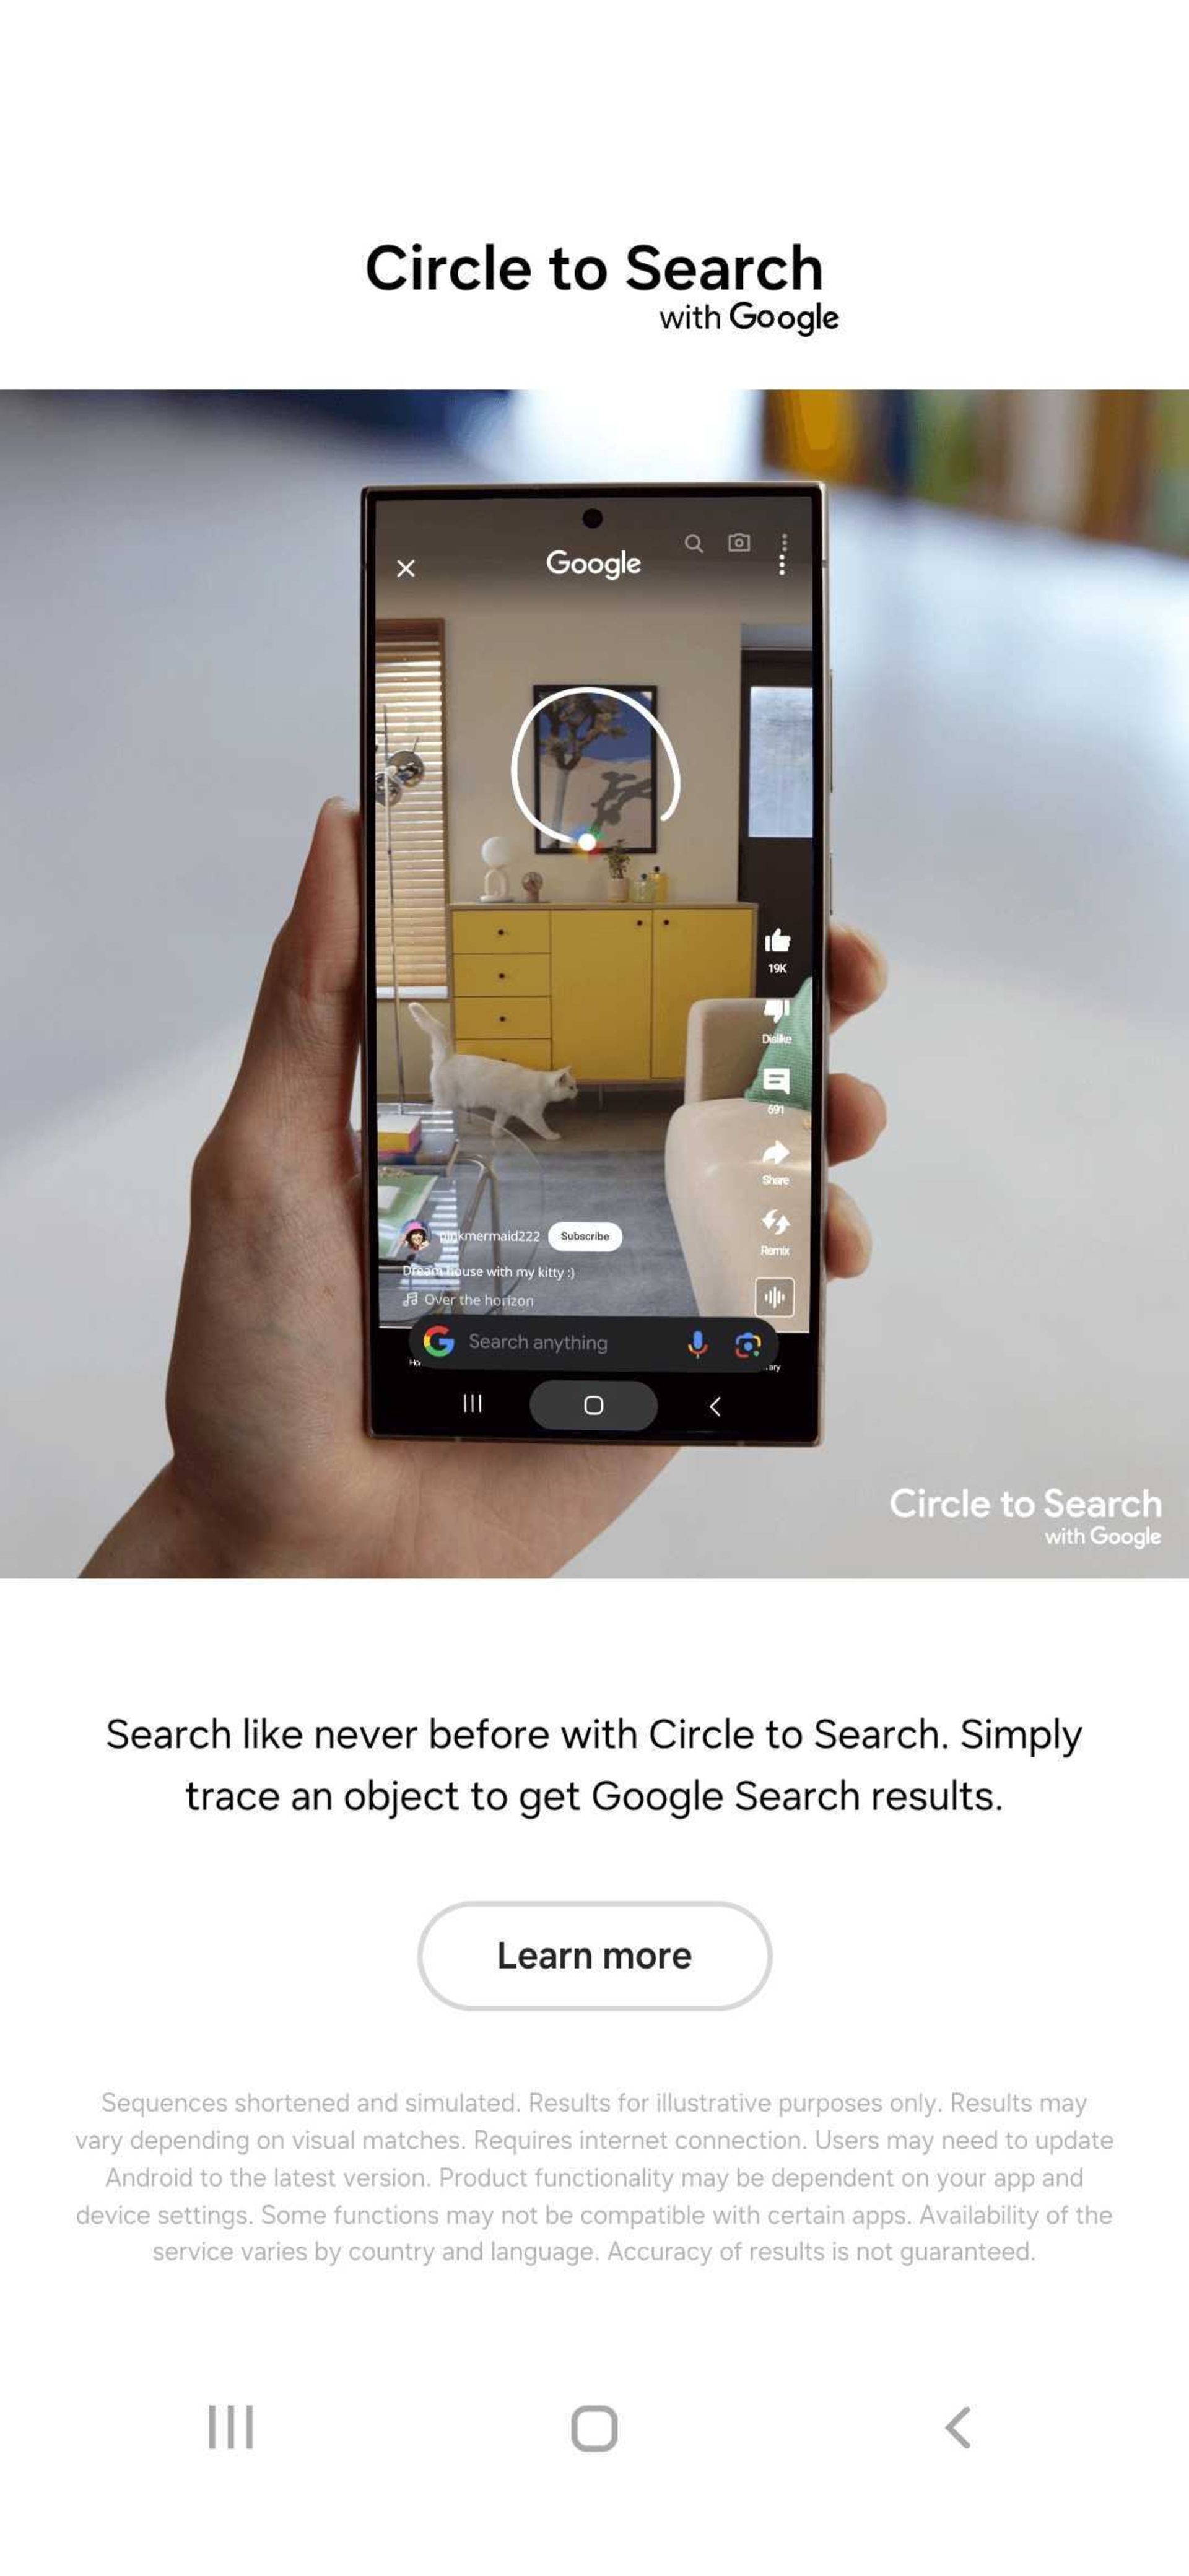 گوشی در دست با نمایش قابلیت circle to search